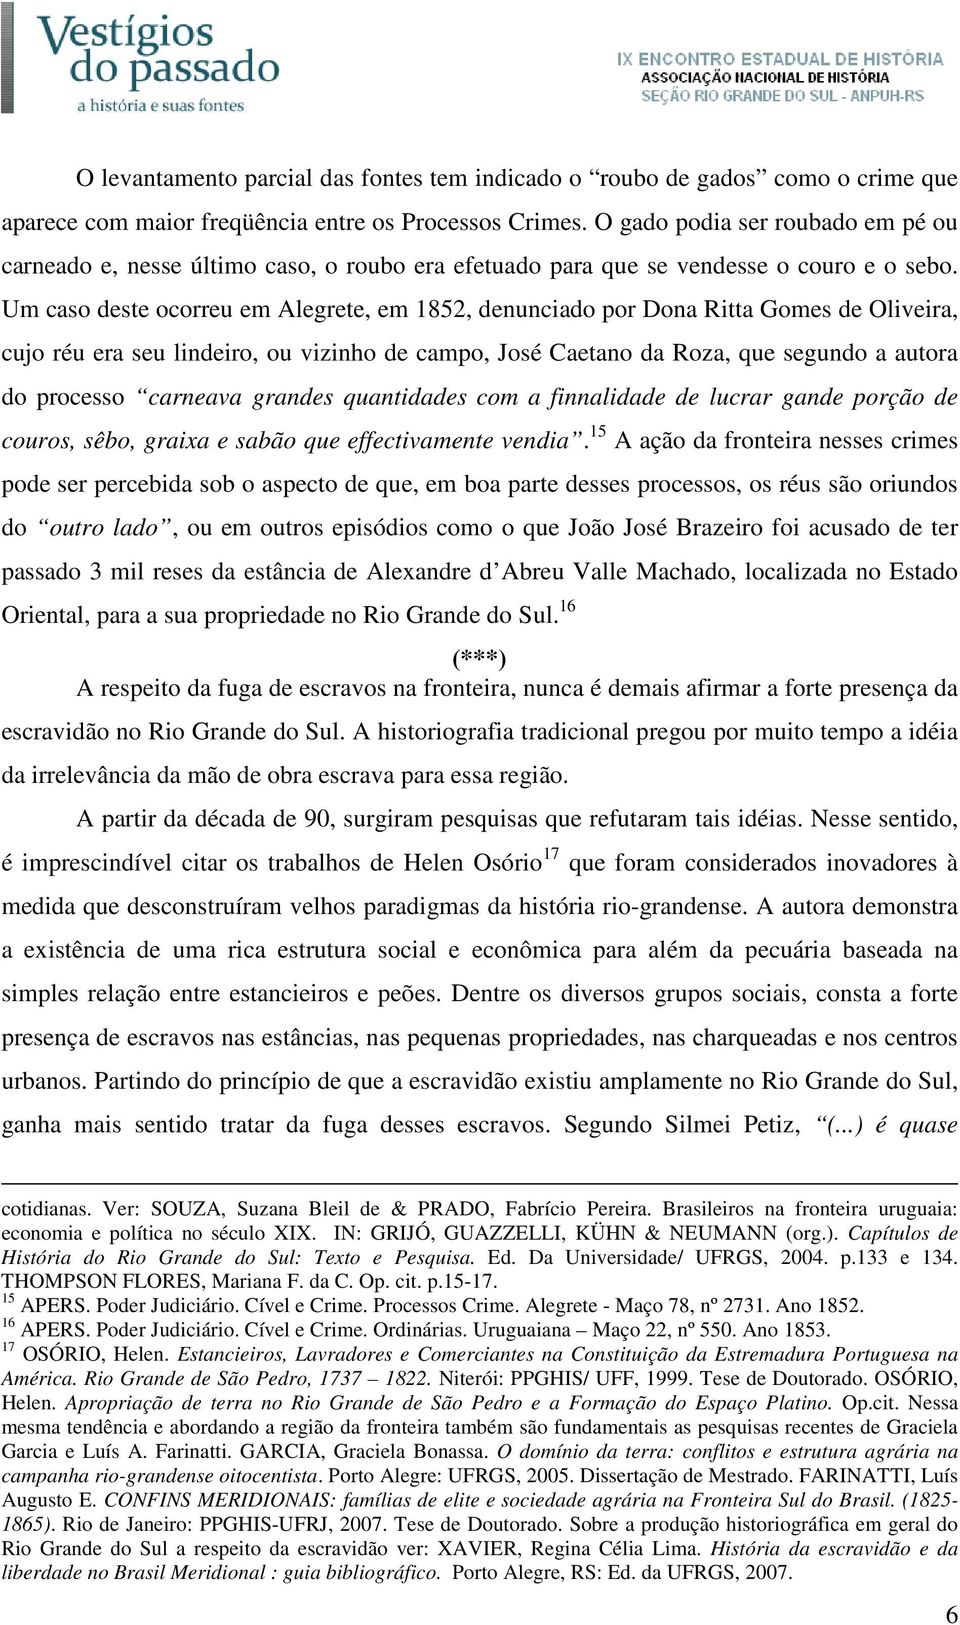 Um caso deste ocorreu em Alegrete, em 1852, denunciado por Dona Ritta Gomes de Oliveira, cujo réu era seu lindeiro, ou vizinho de campo, José Caetano da Roza, que segundo a autora do processo